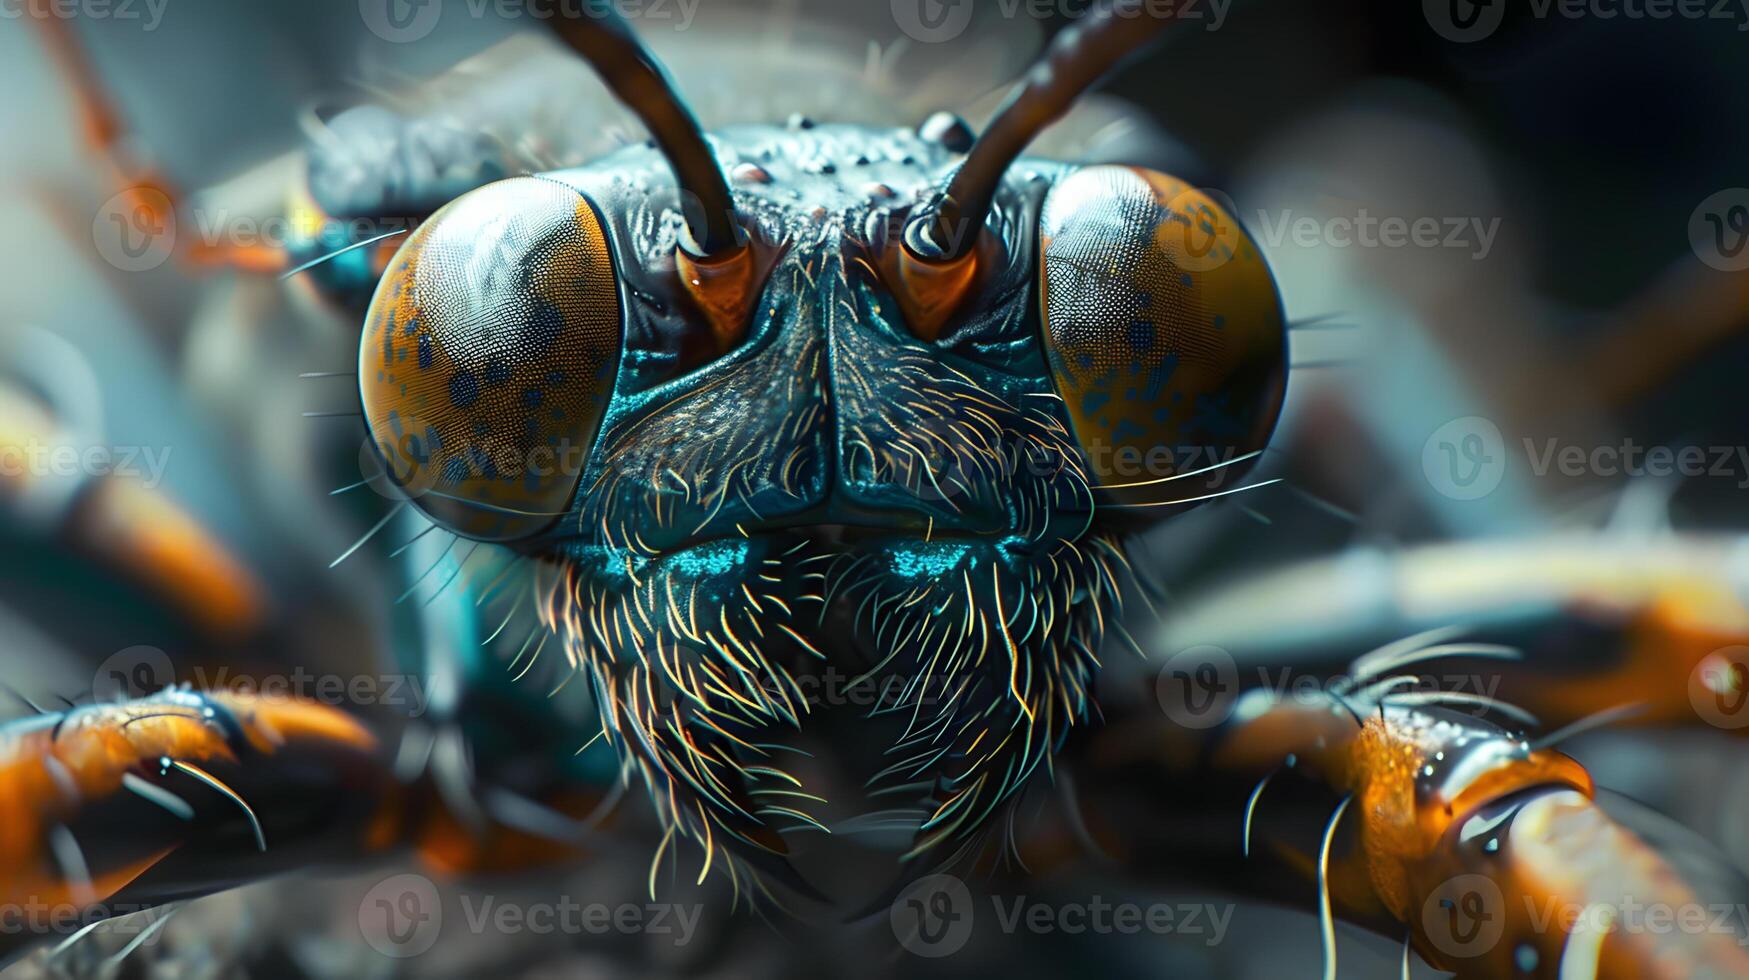 Makro fotografieren von ein Insekt mit Beine, Antennen und Augen. foto